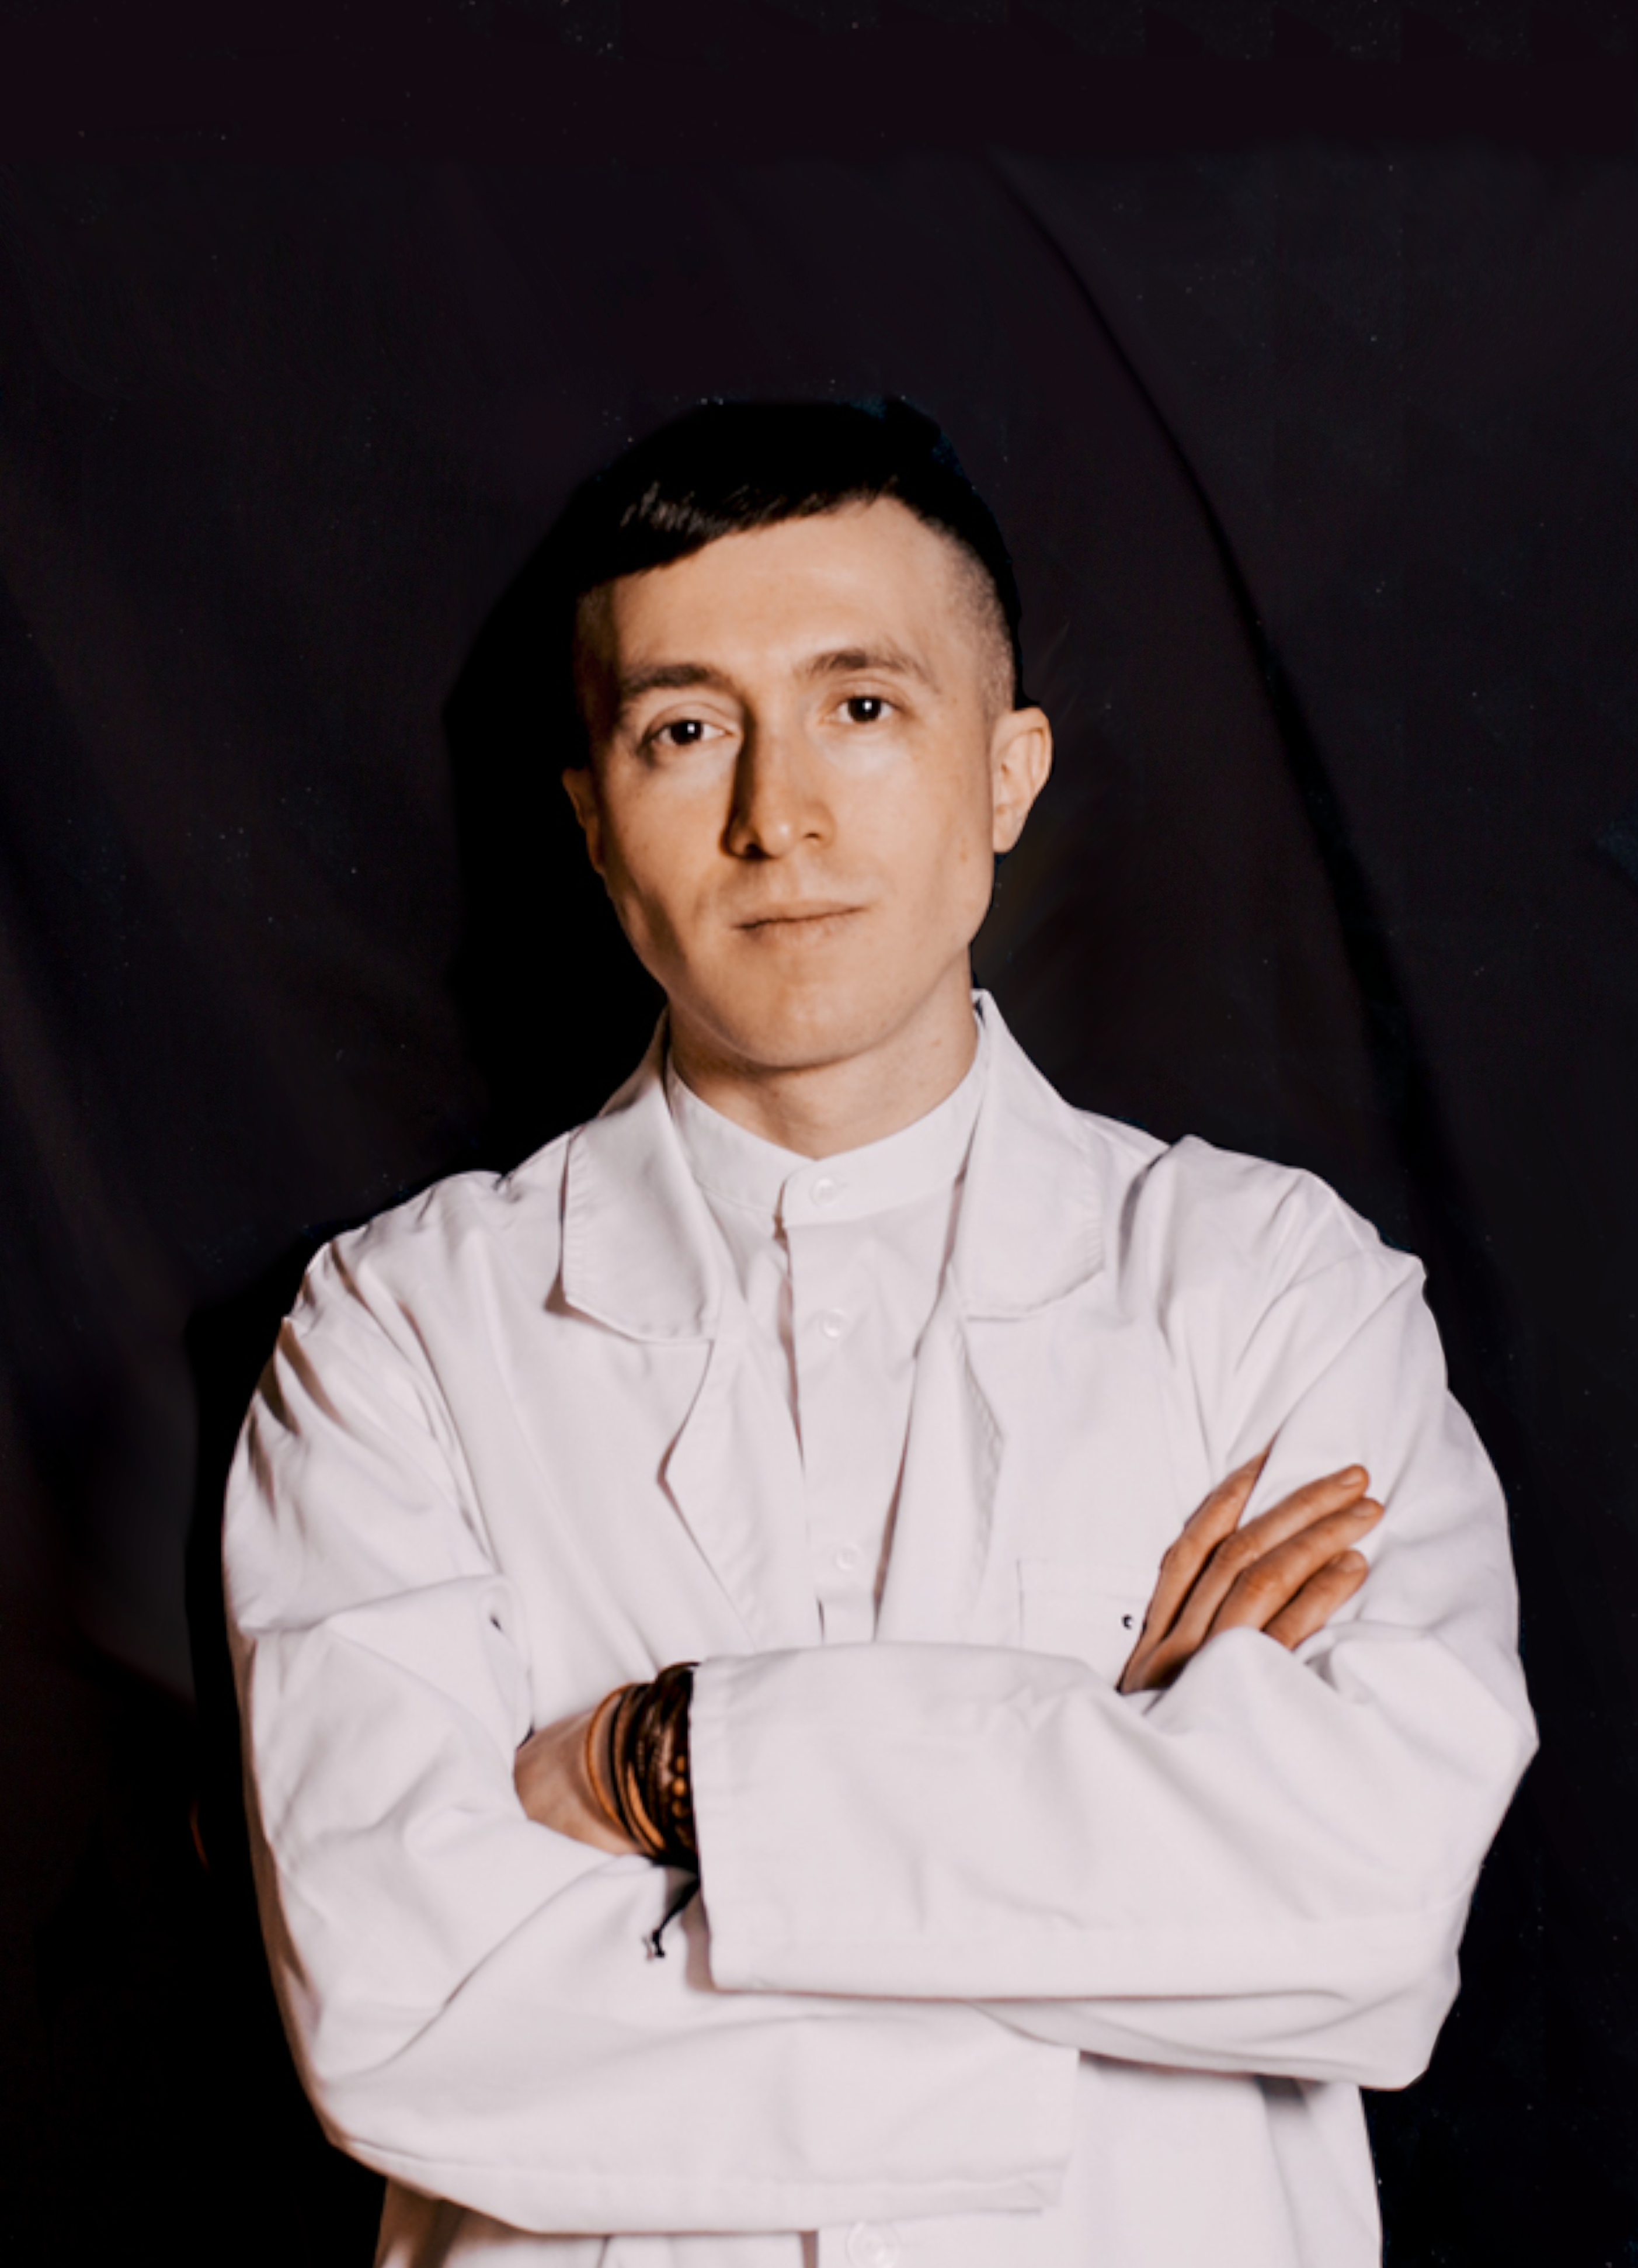 Отзыв о враче-гастроэнтерологе взрослом и детском Соболе Александре Андреевиче